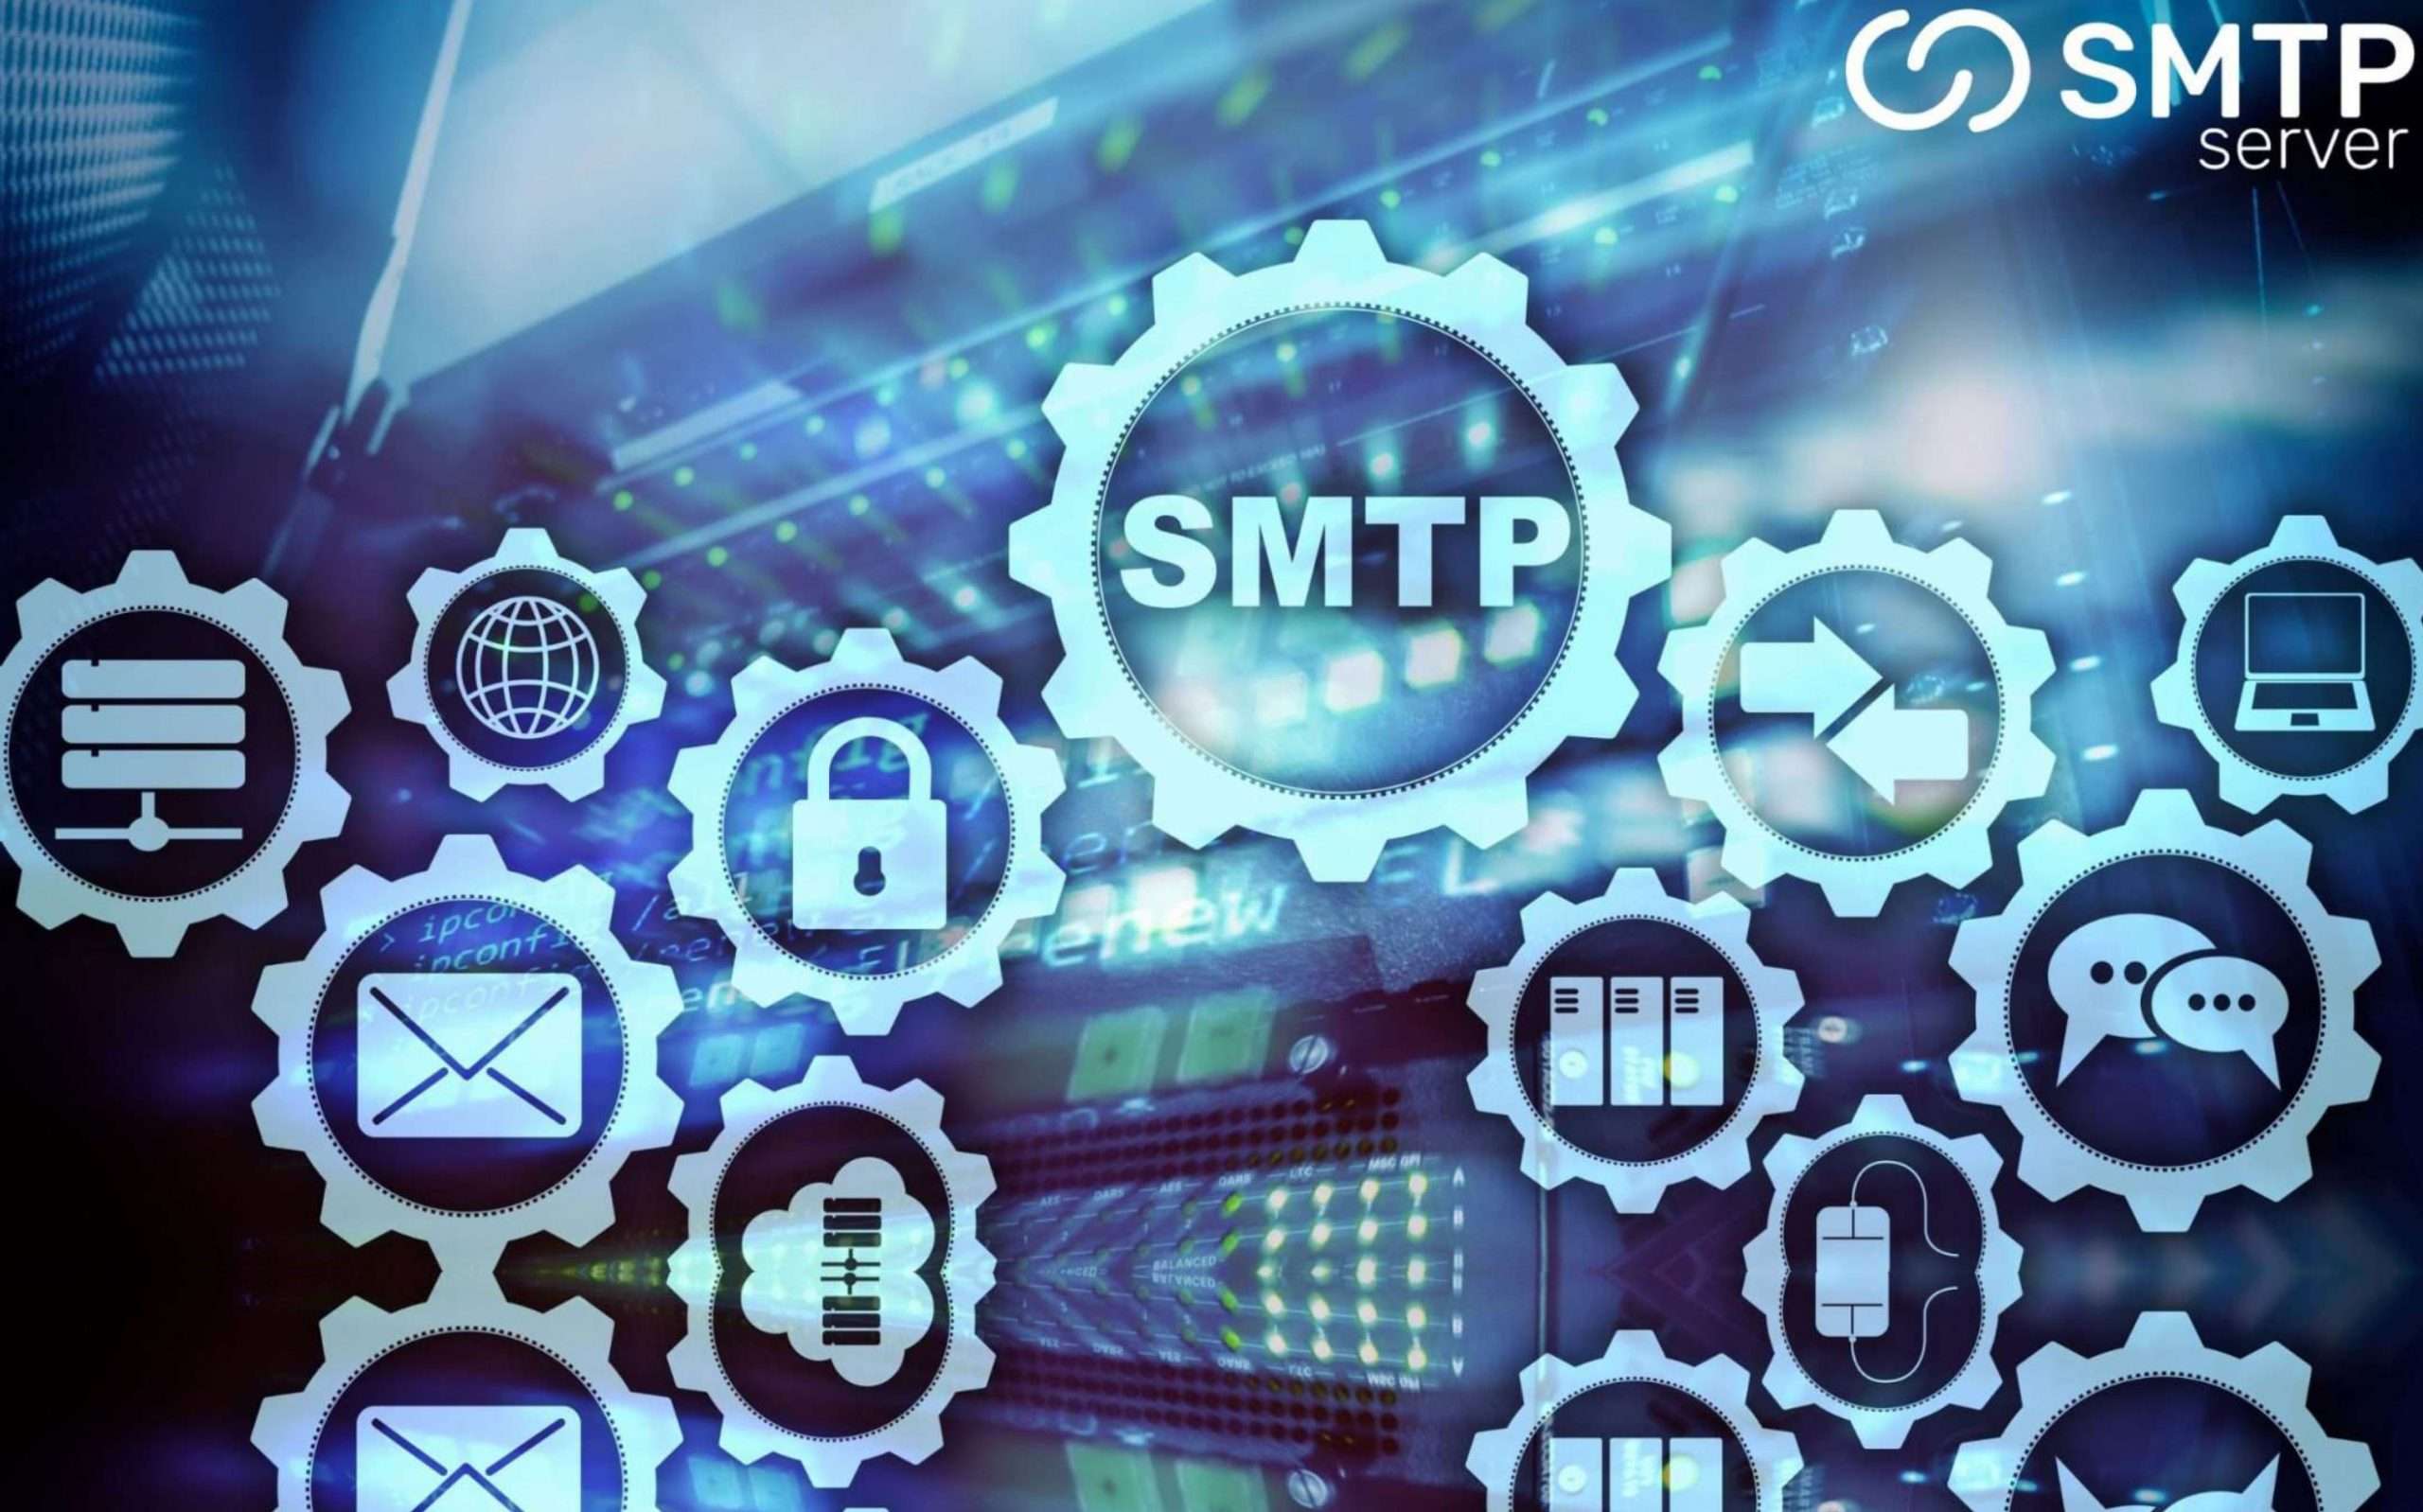 How to configure an SMTP server